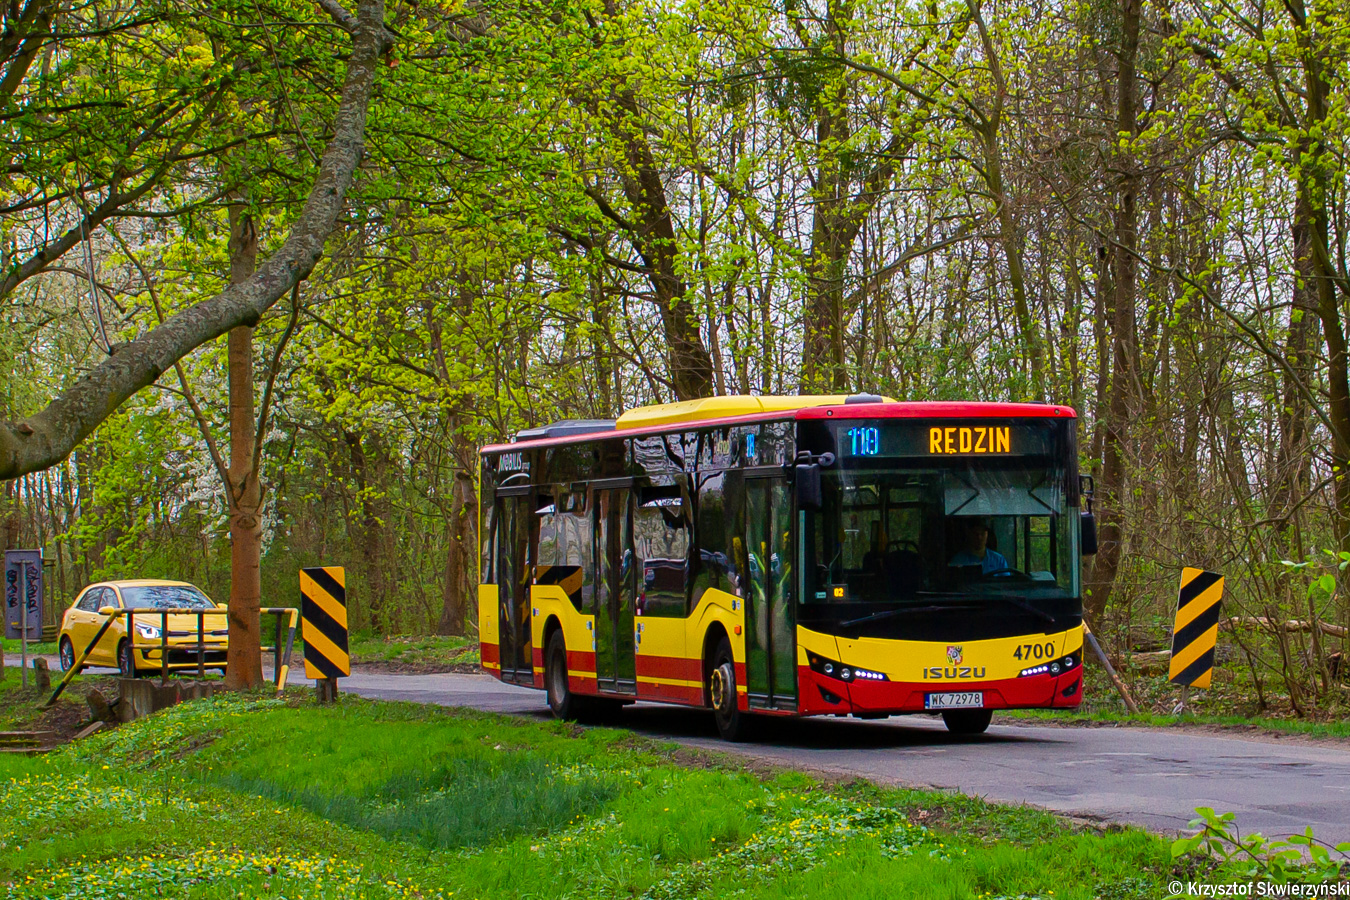 Київ уклав договір на закупівлю турецьких автобусів на 18,6 млн євро